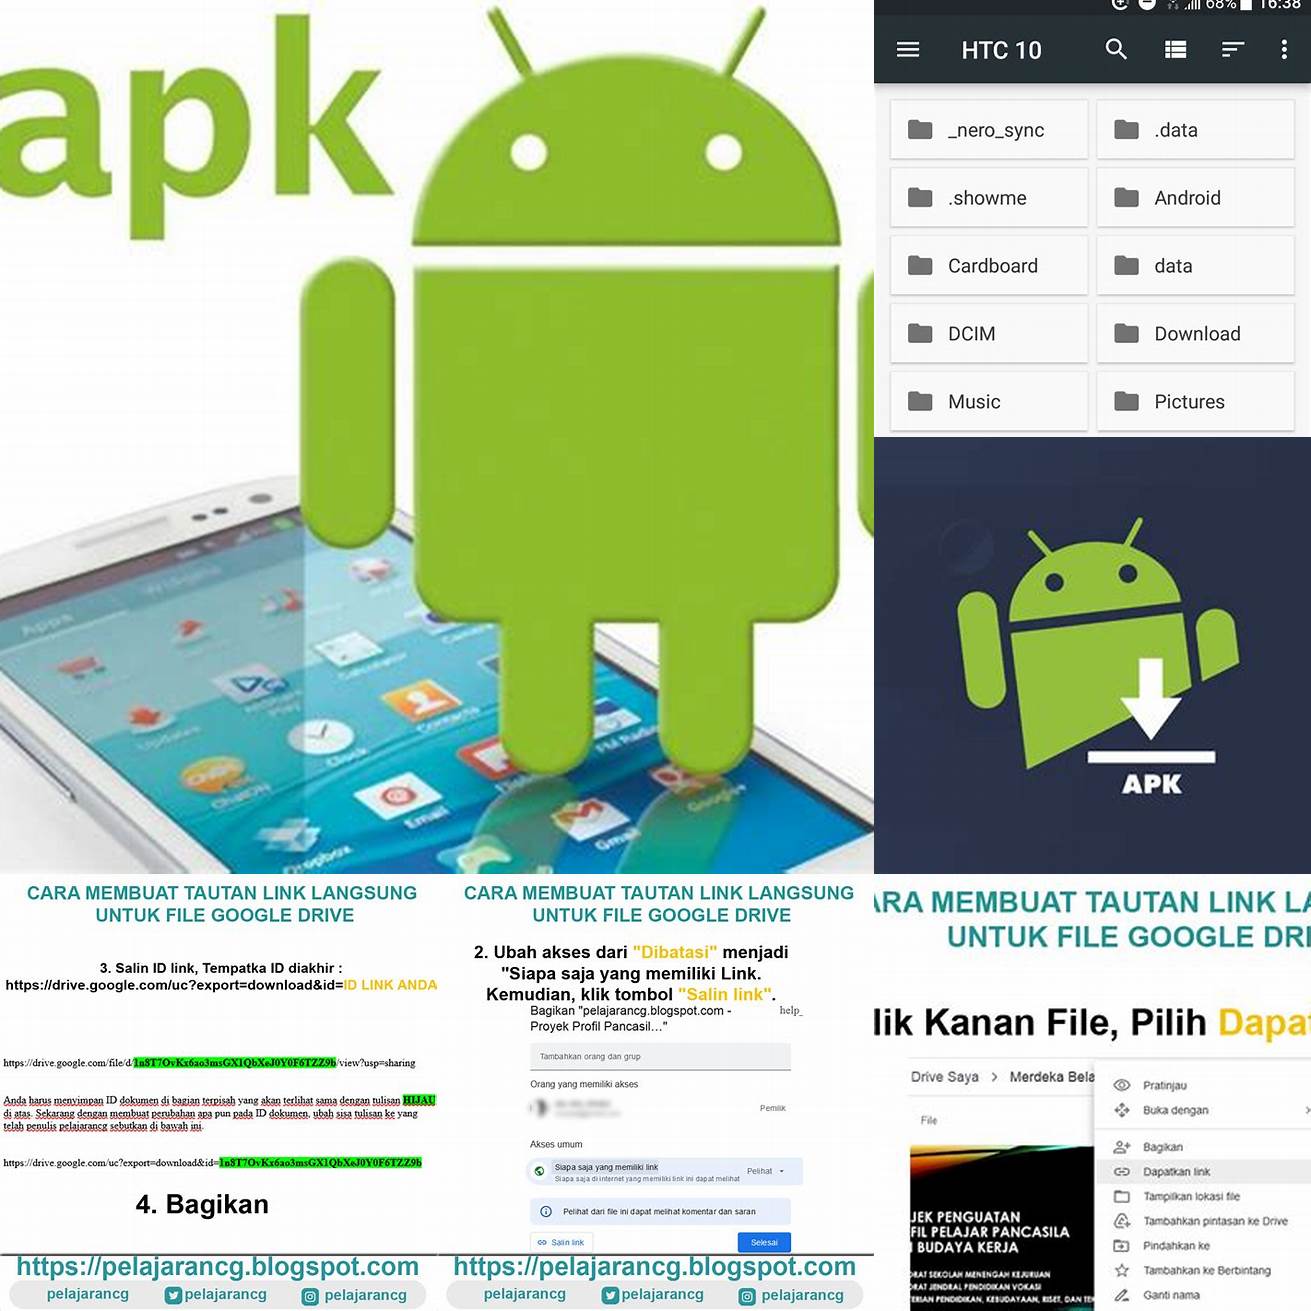 Klik tautan unduhan untuk mengunduh file APK ke perangkat Android Anda